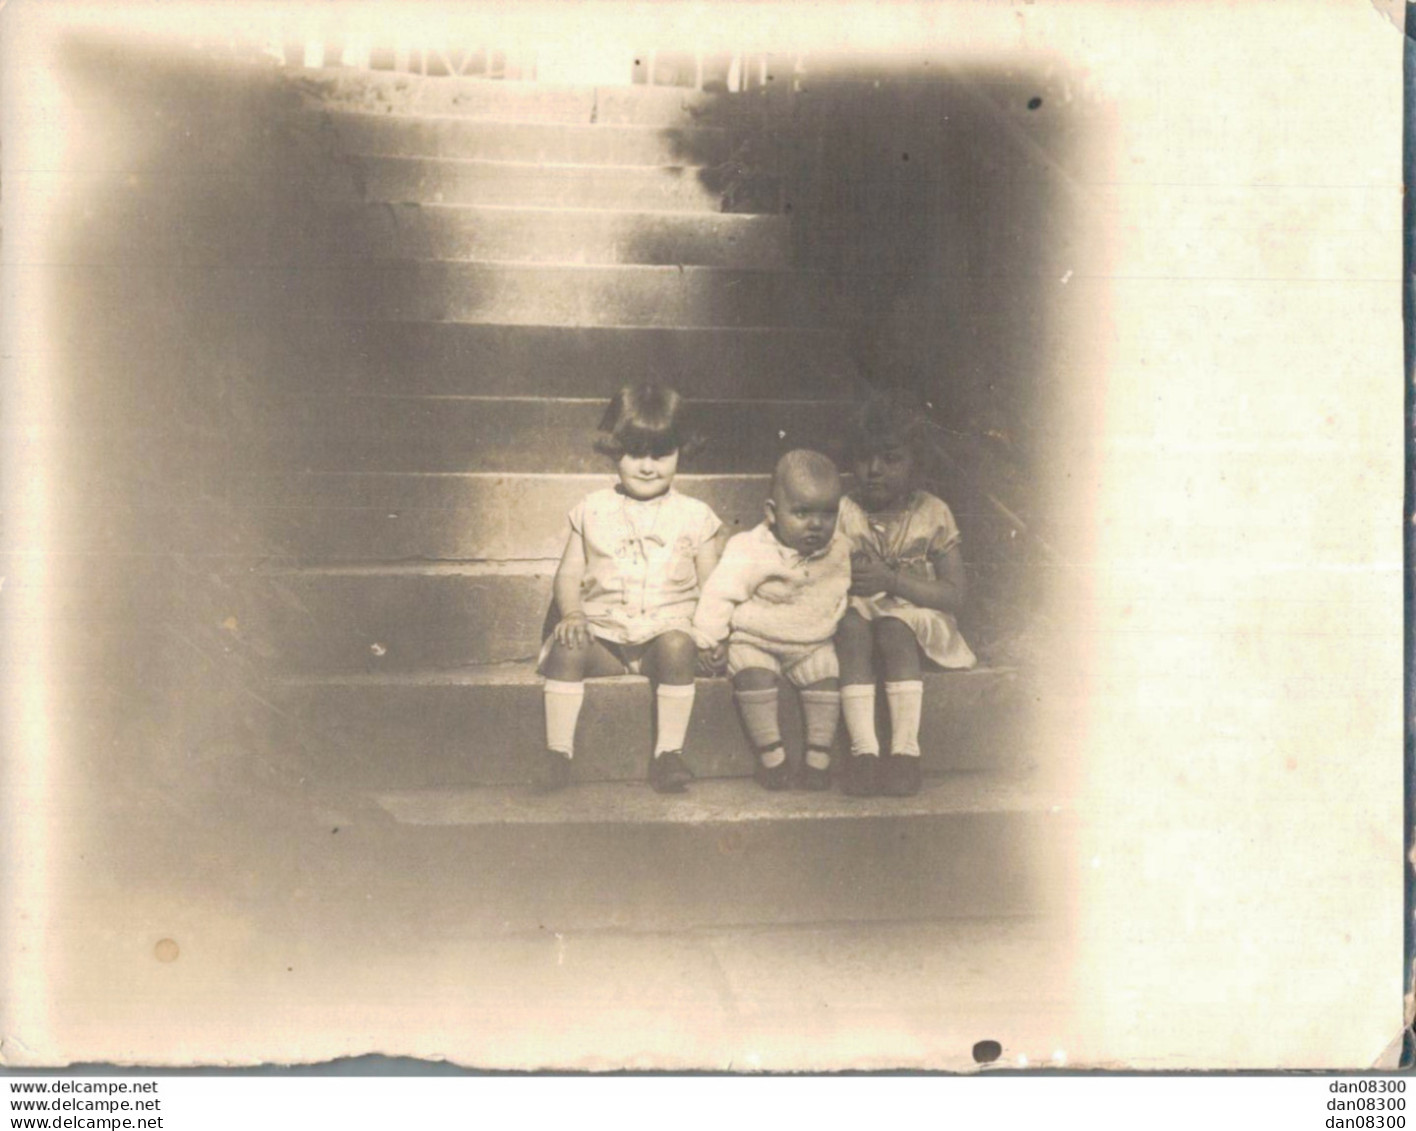 PHOTO DE 12 X 9 CMS TROIS ENFANTS ASSIS SUR LES ESCALIERS SOUVENIR DE MME GERMAINE BONNEROT EN 1929 - Personnes Anonymes